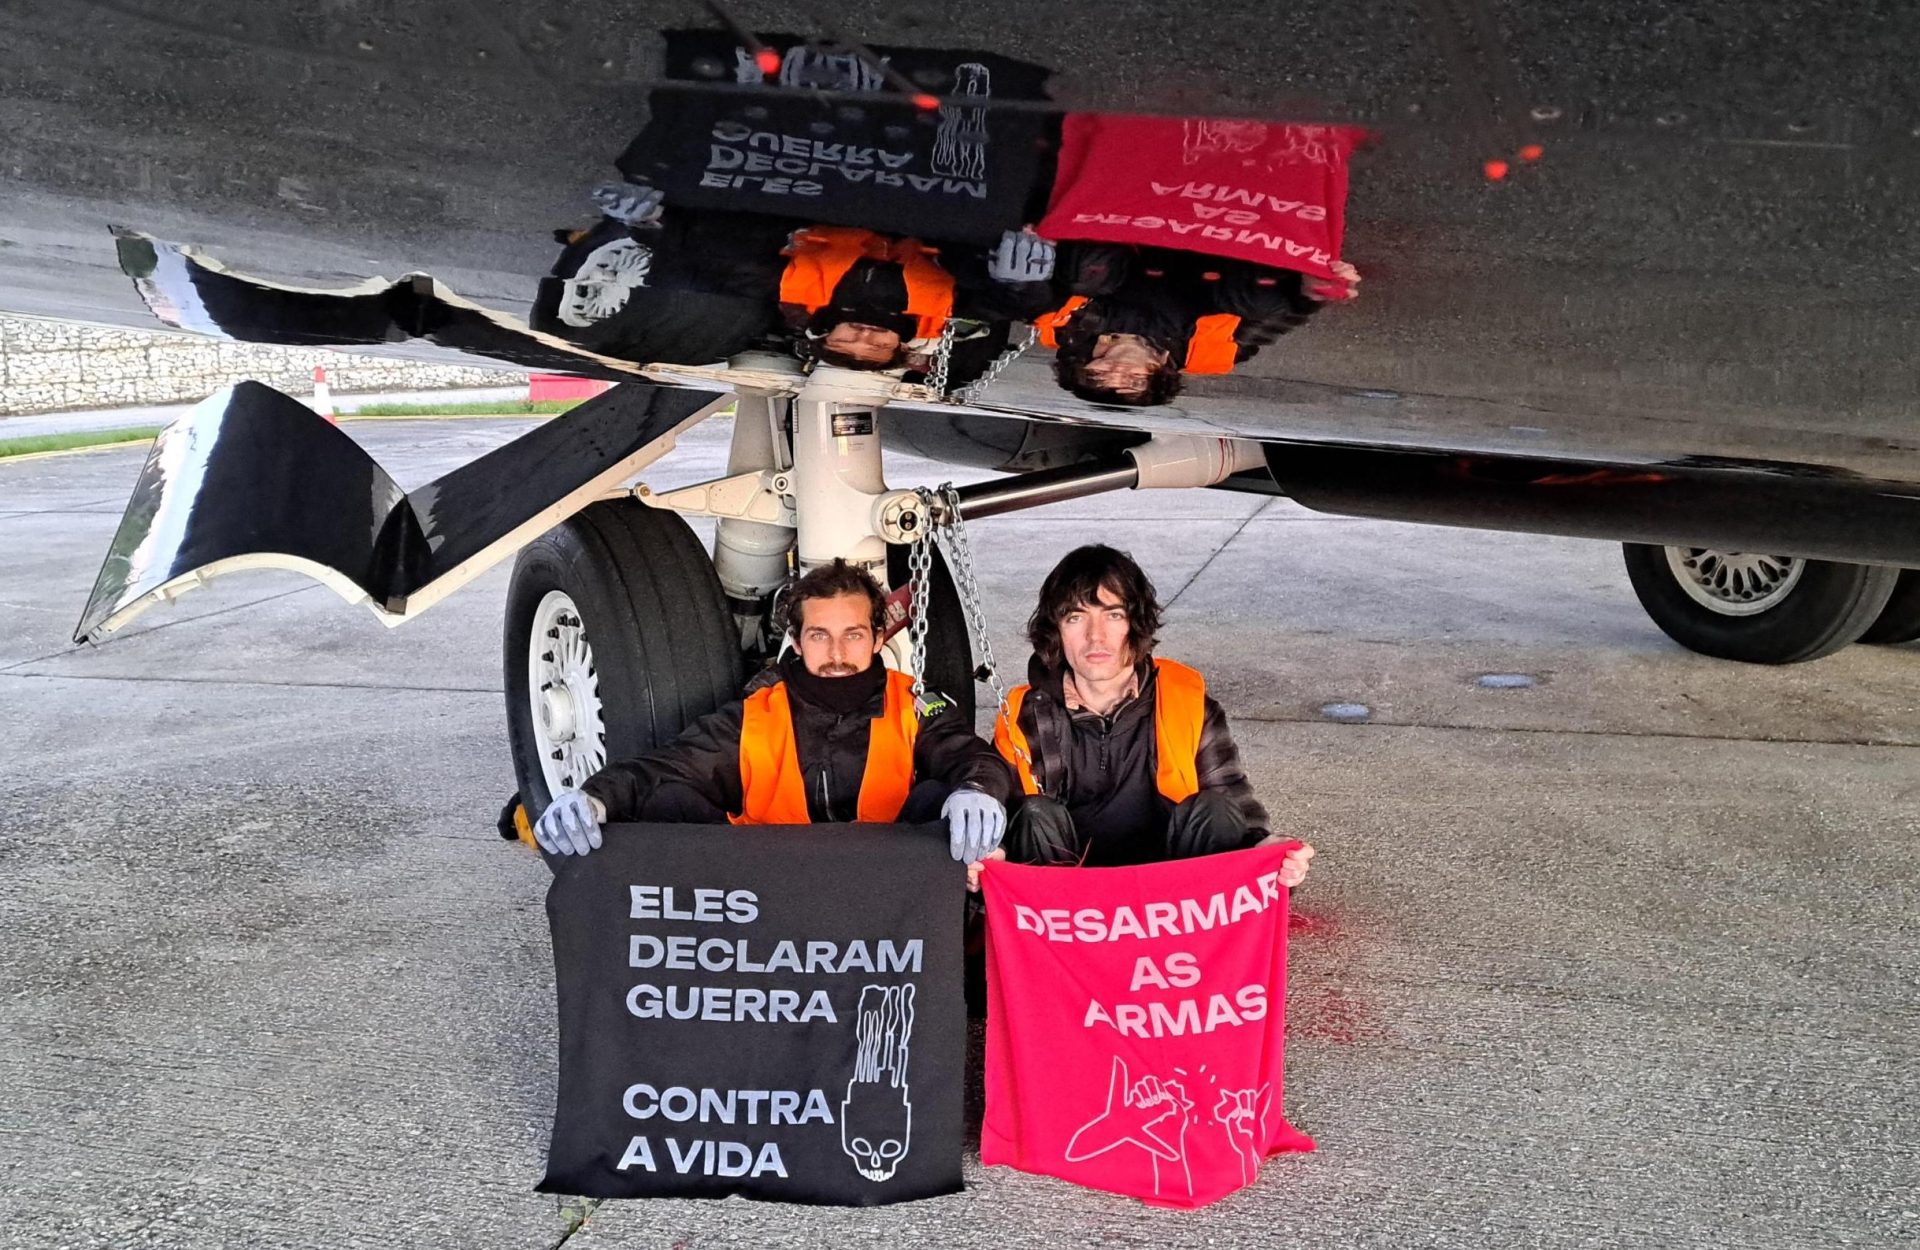 Seis ativistas do Climáximo detidos por pintarem jato privado no Aeródromo de Tires